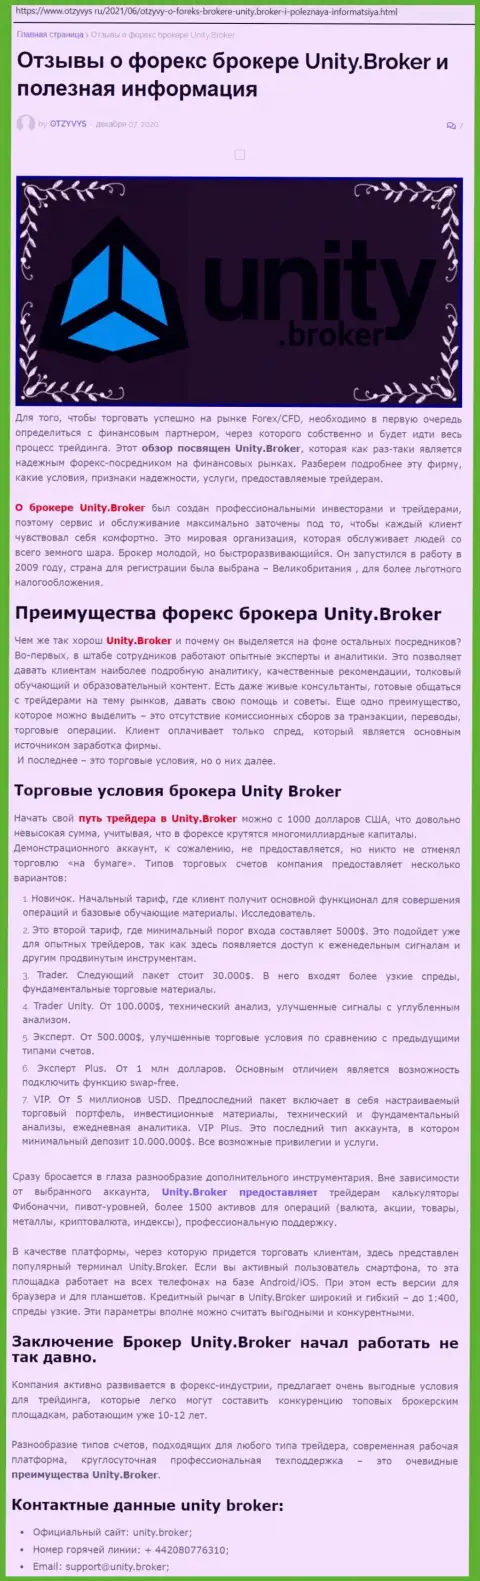 Статья о ФОРЕКС-дилинговой организации Unity Broker на сайте Отзивис Ру